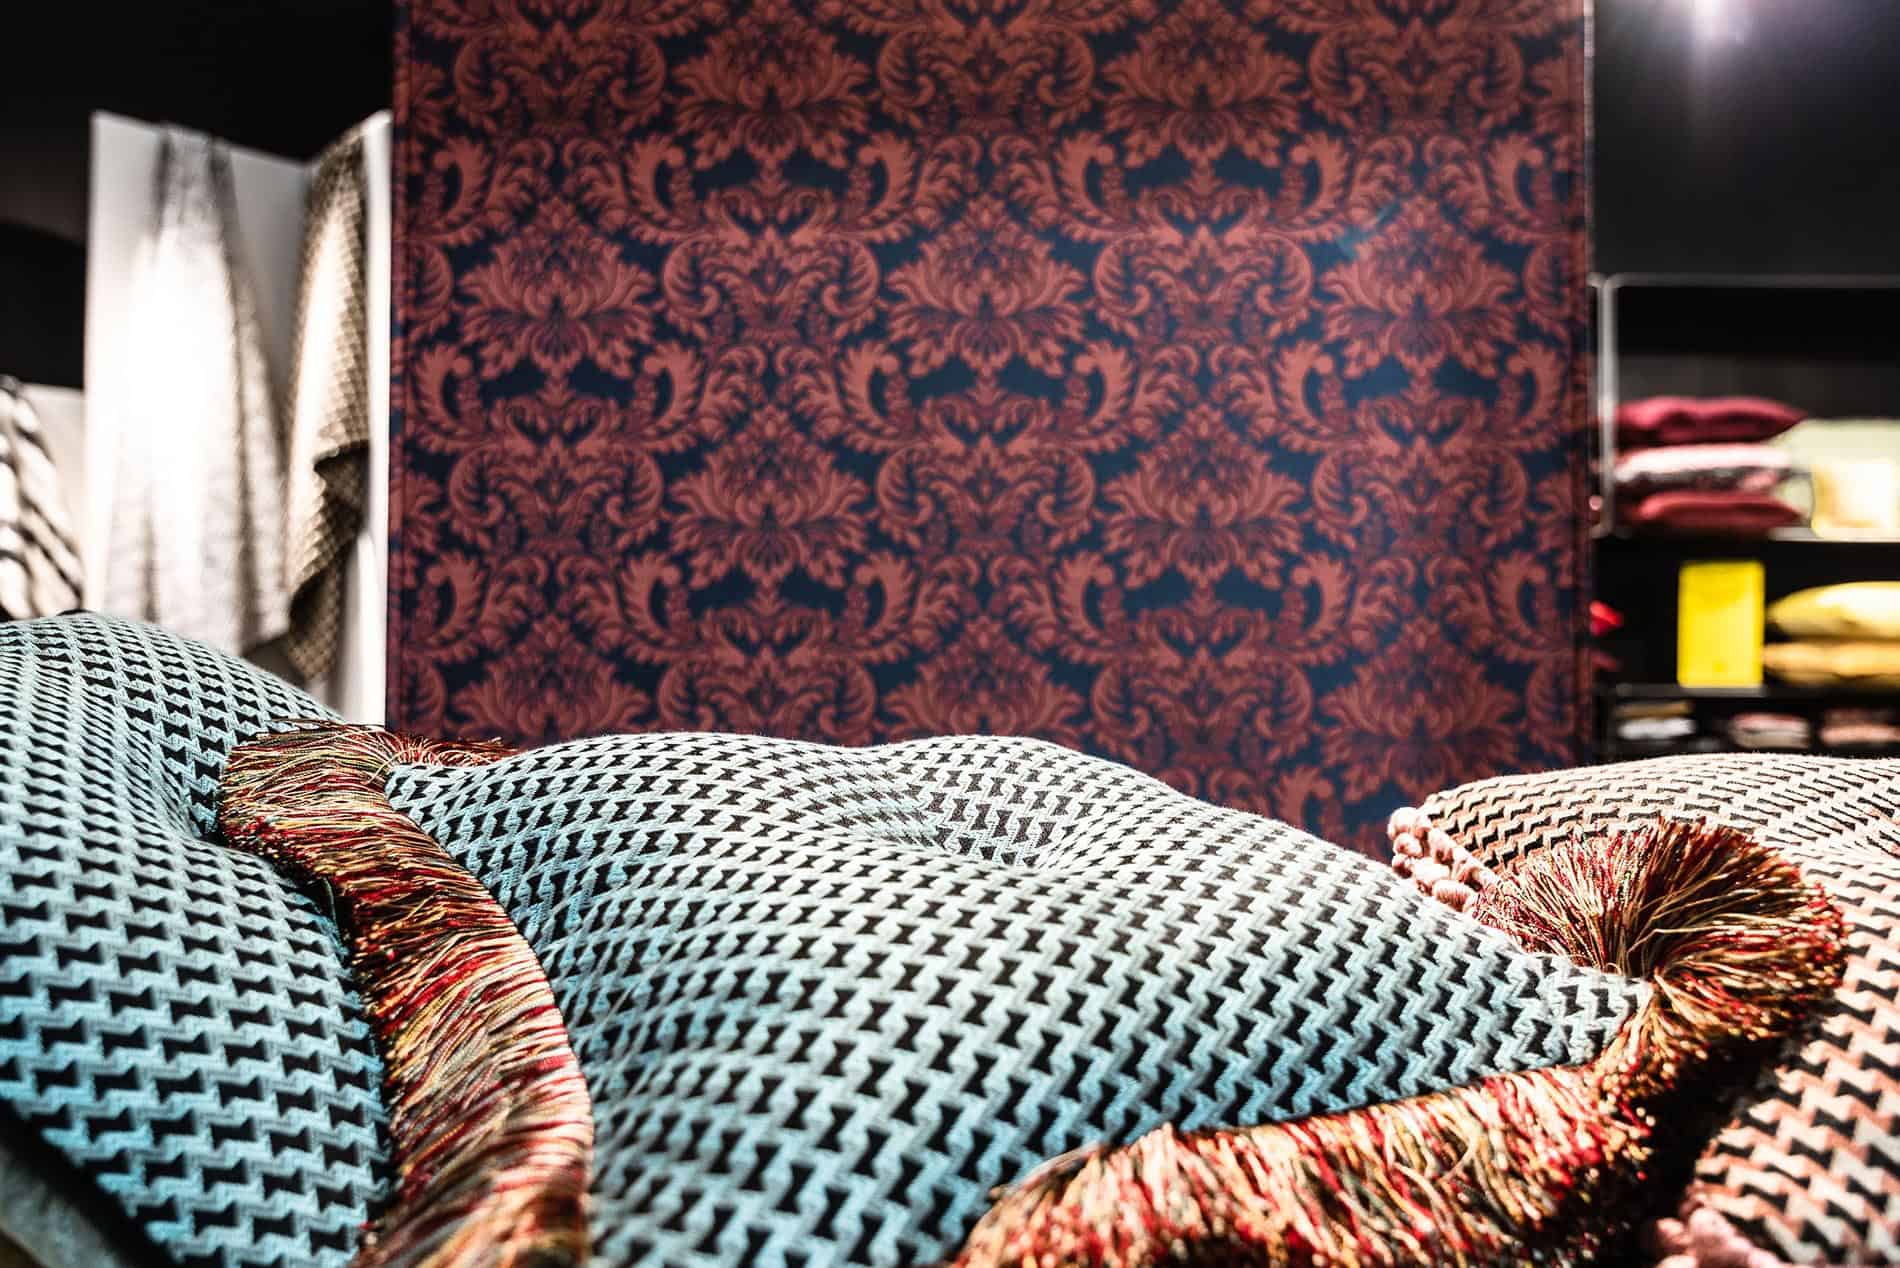 interview to Barbara Bertoldo textile designer L'Opificio Torino